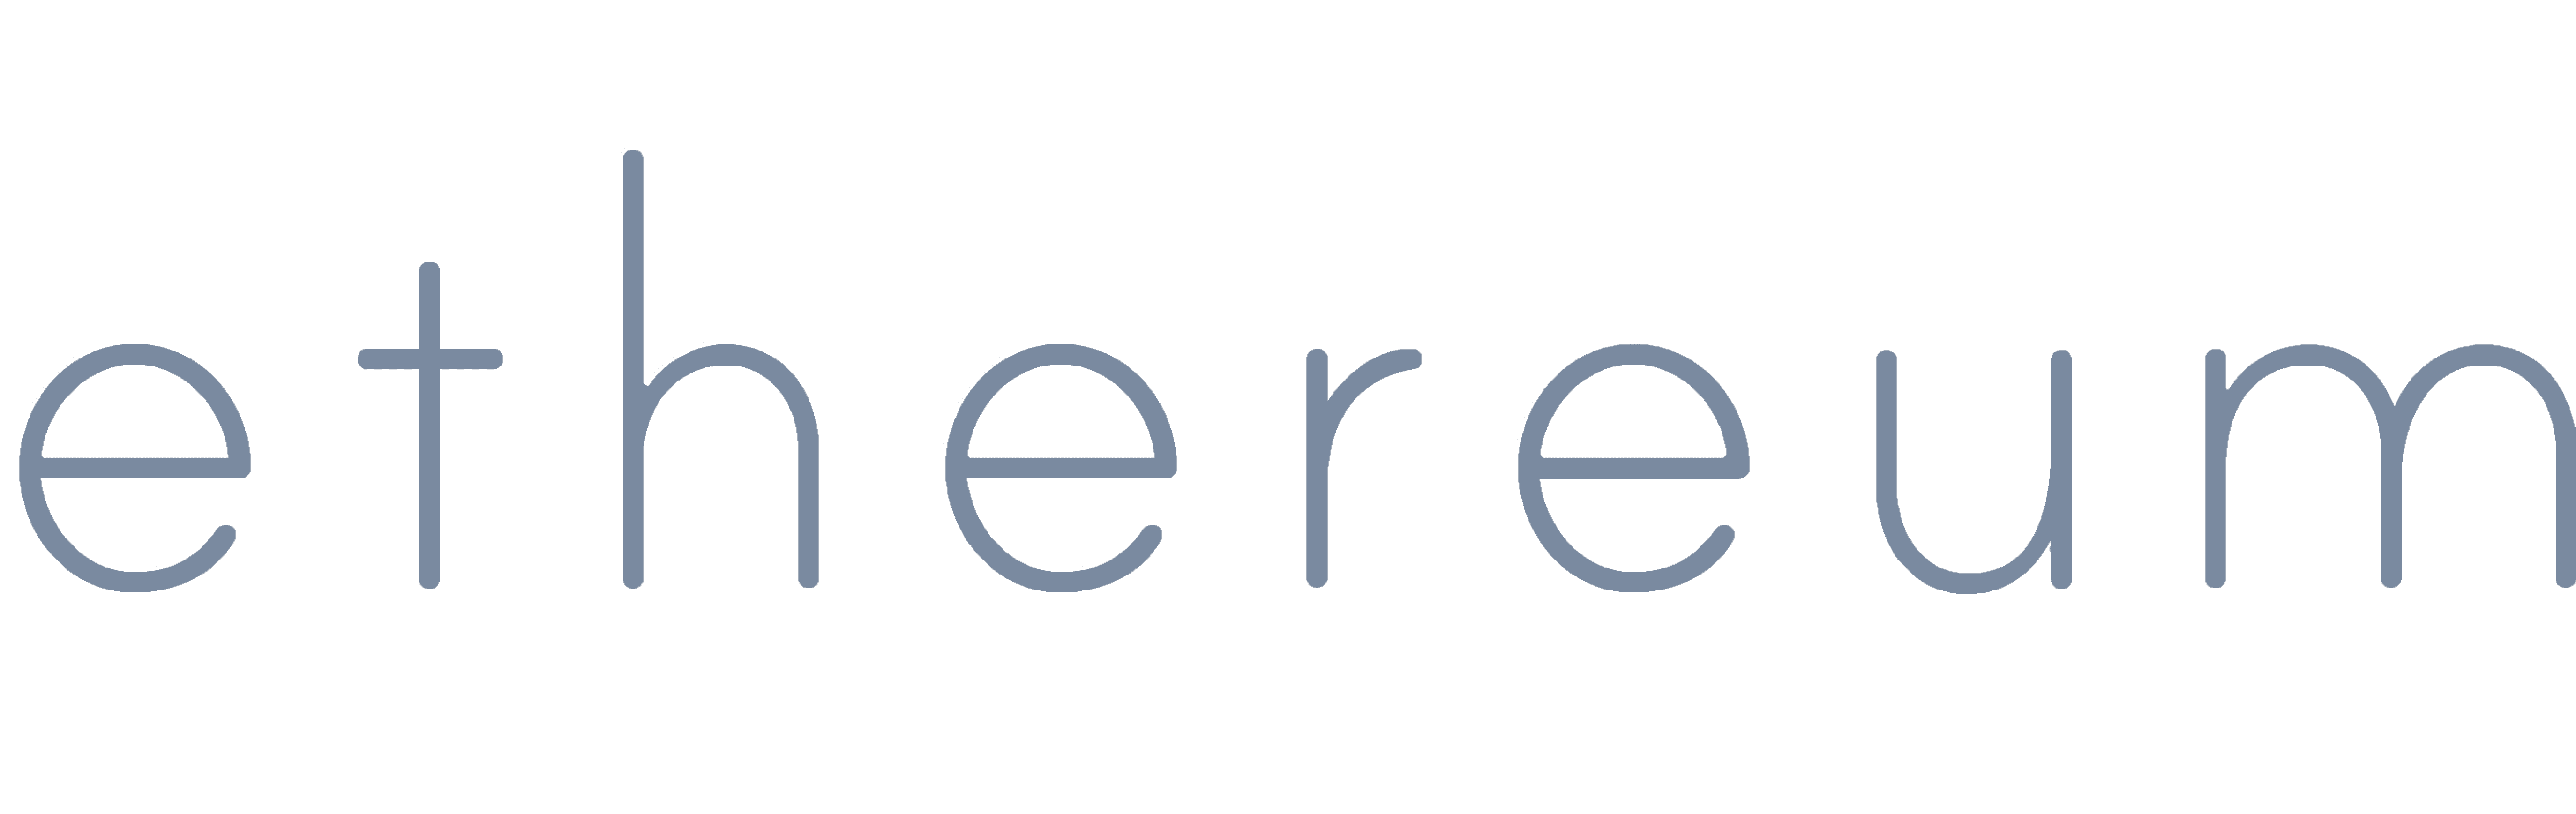 Logo placeholder for Ethereum